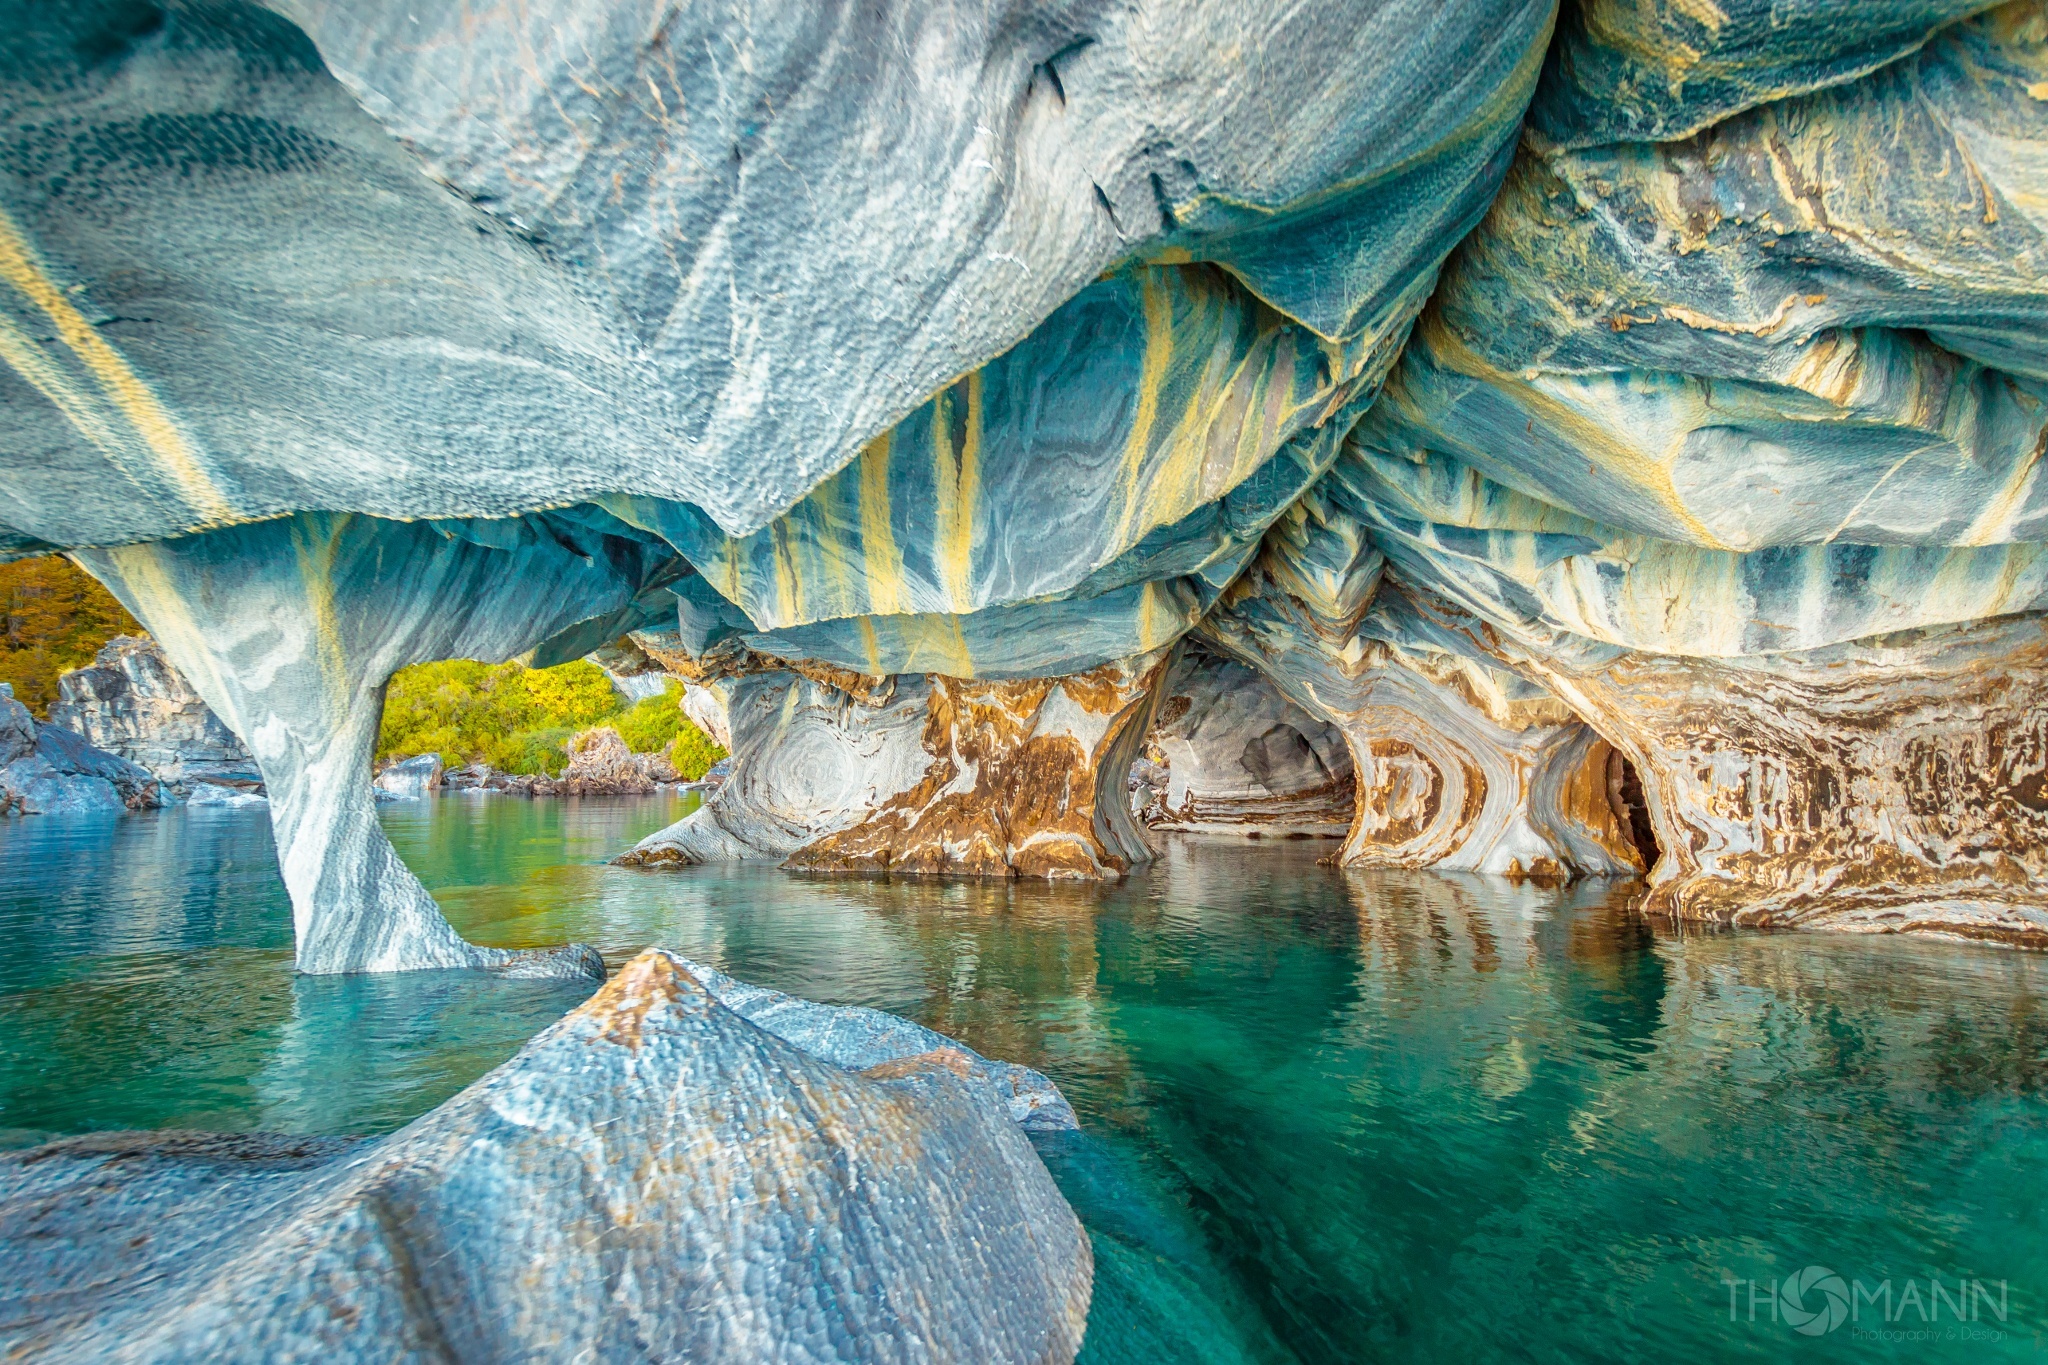 Места с уникальной природой. Мраморные пещеры Чиле-Чико. Мраморные пещеры Патагонии Чили. Мраморные пещеры в Чили Чико. Озеро Хенераль Каррера.